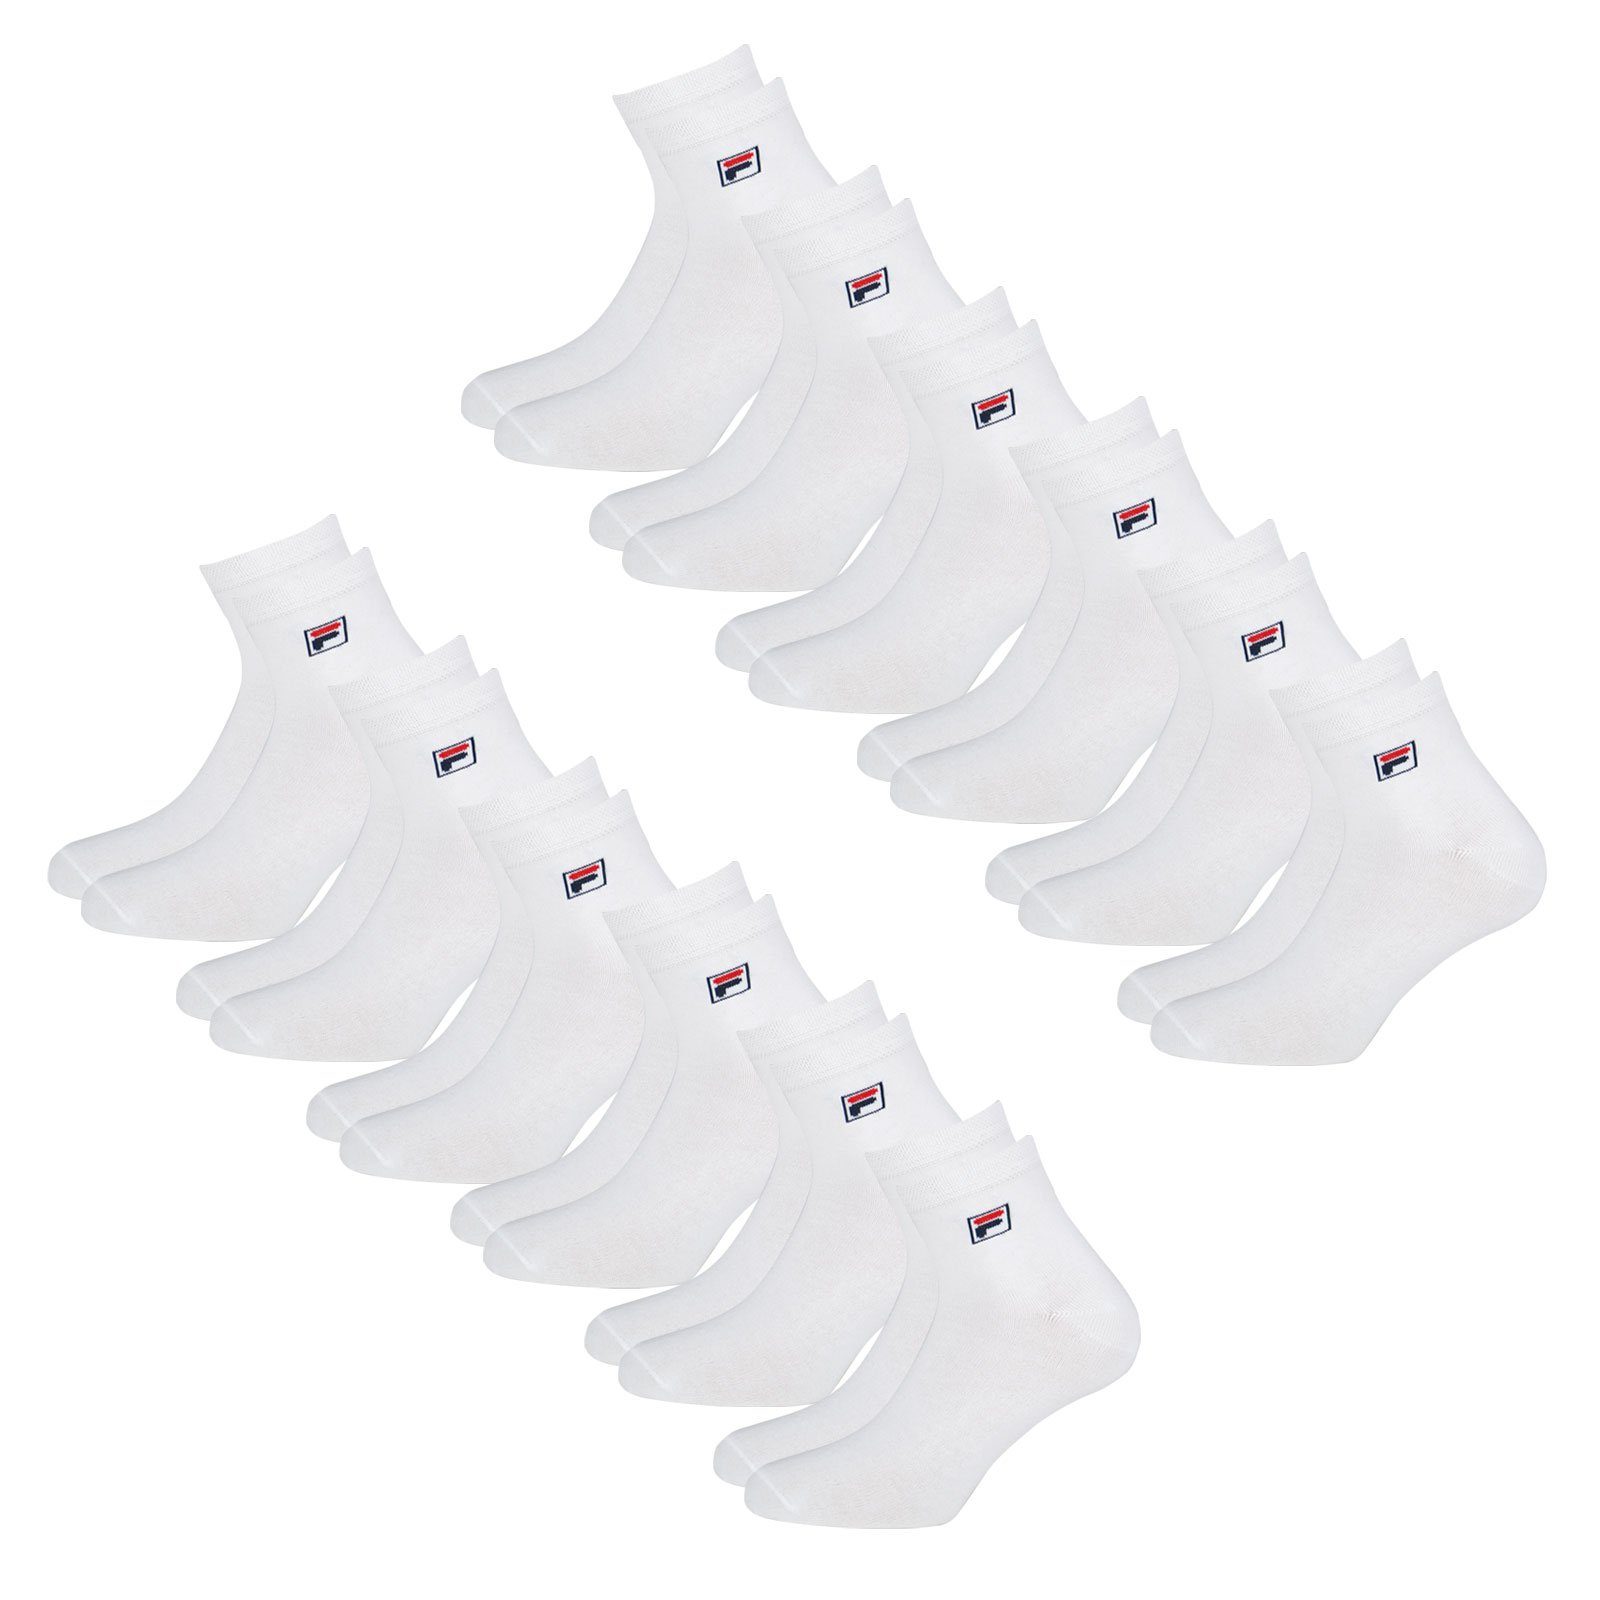 Socken 300 Quarter mit Sportsocken elastischem Fila Piquebund white (12-Paar)